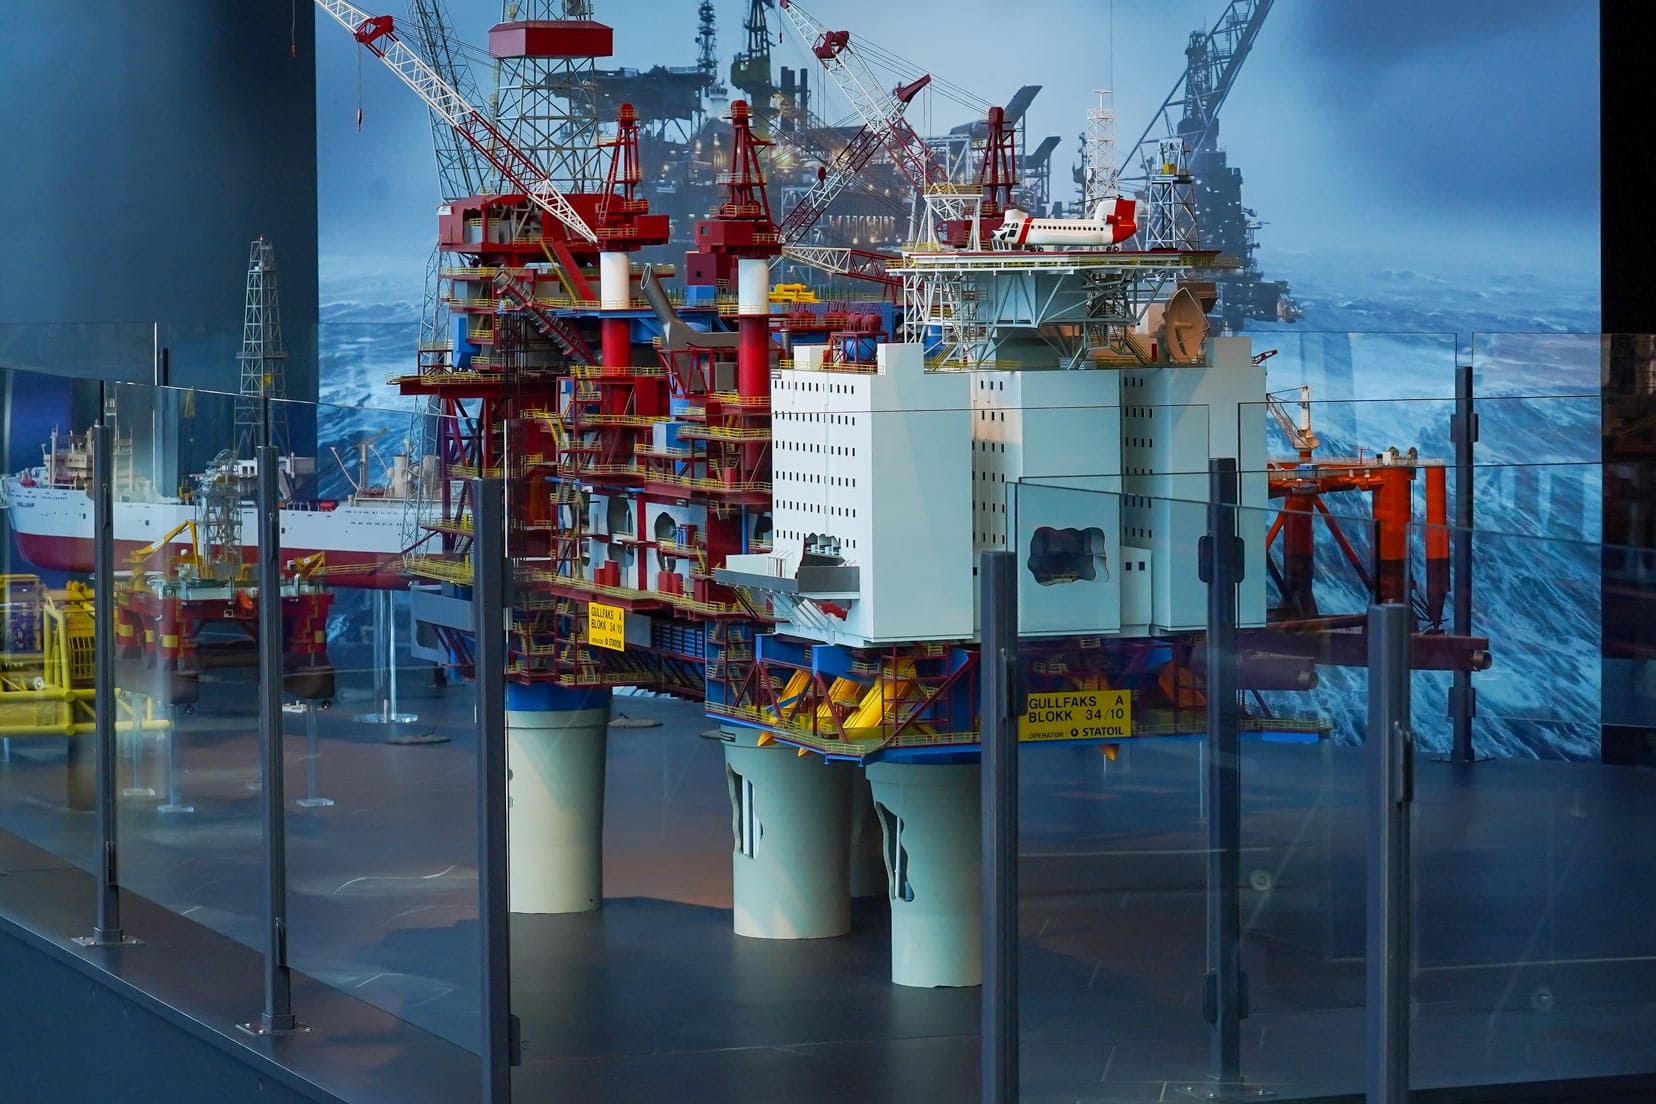 Stavanger-museum-oil rig model